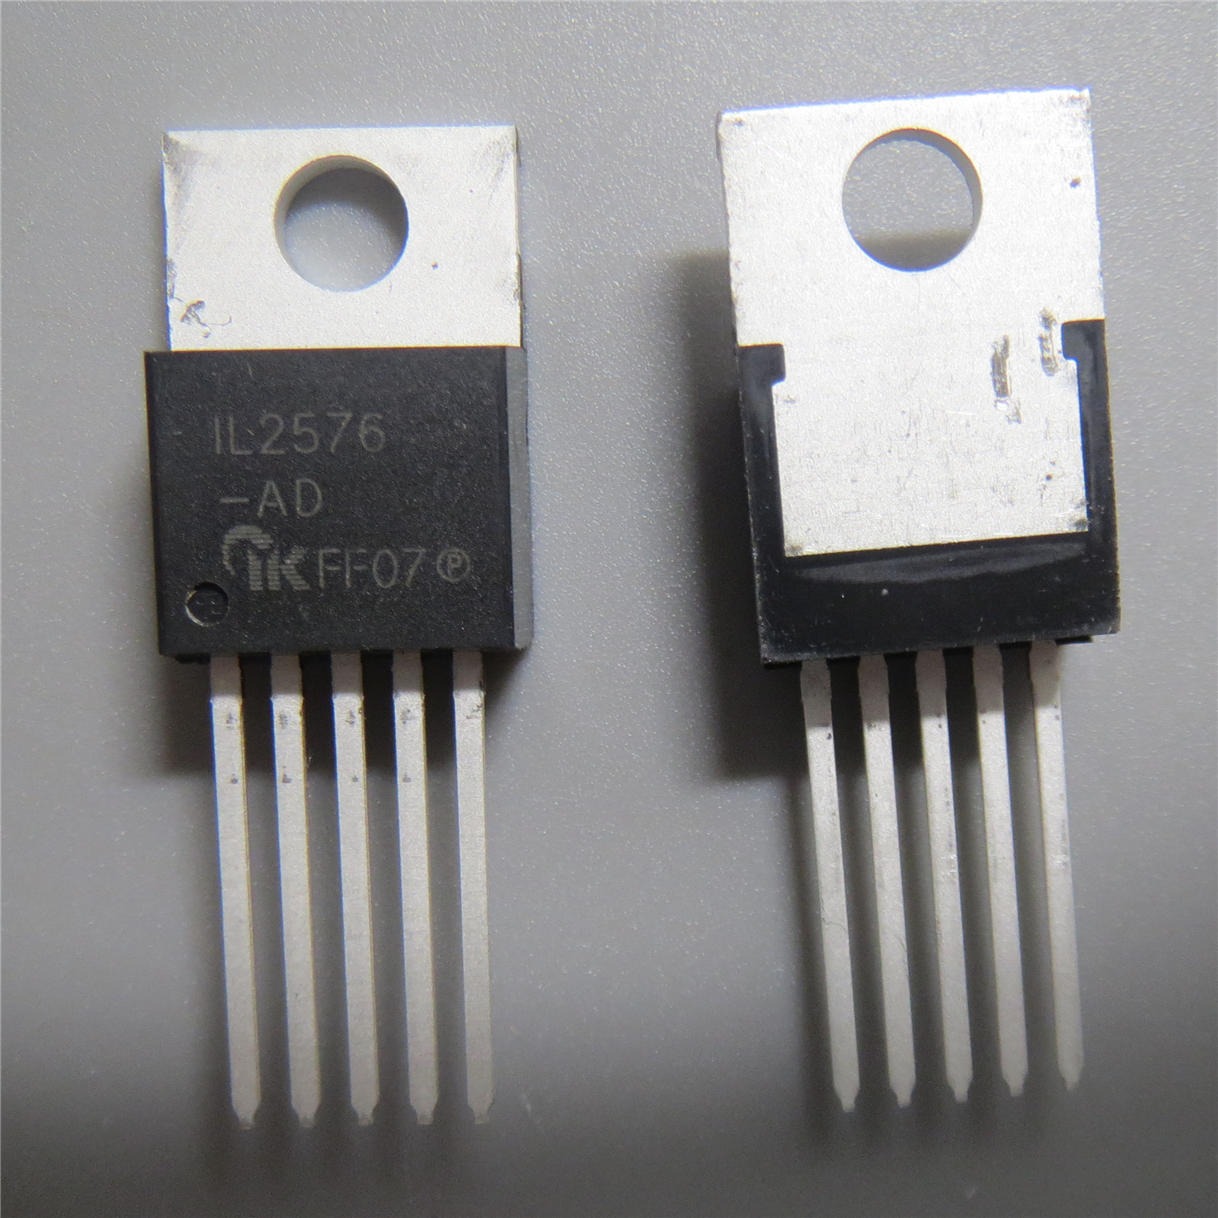 IL2576-ADJKB-P TO-220 代理  触摸芯片 单片机  电源管理芯片 放算IC专业代理商芯片配单